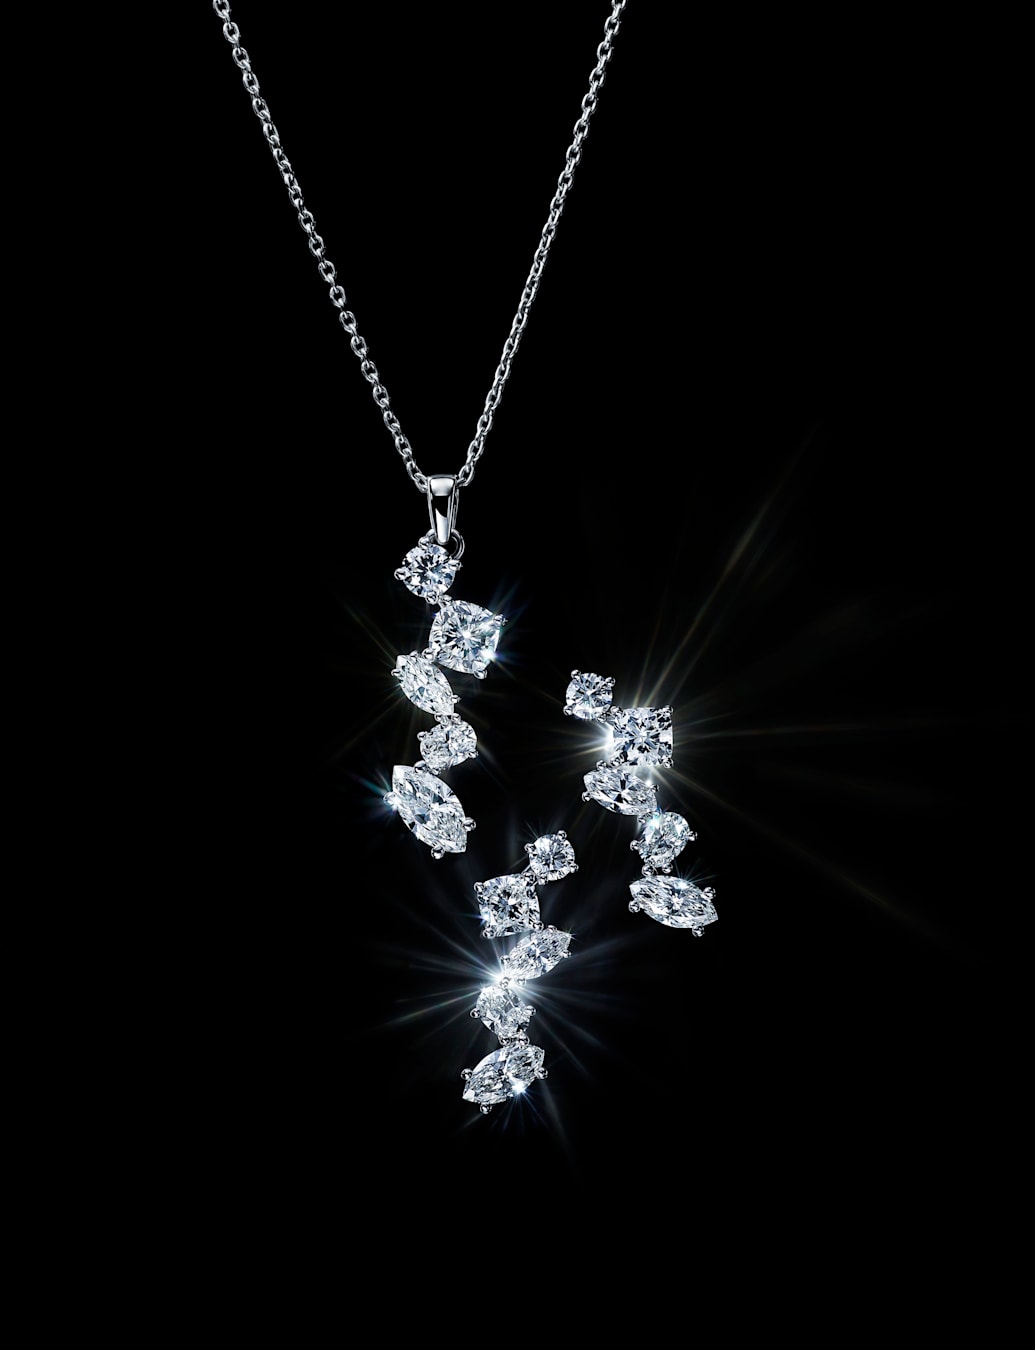 실험실에서 생산된 다이아몬드 이어링의 여유로운 컨셉 이미지